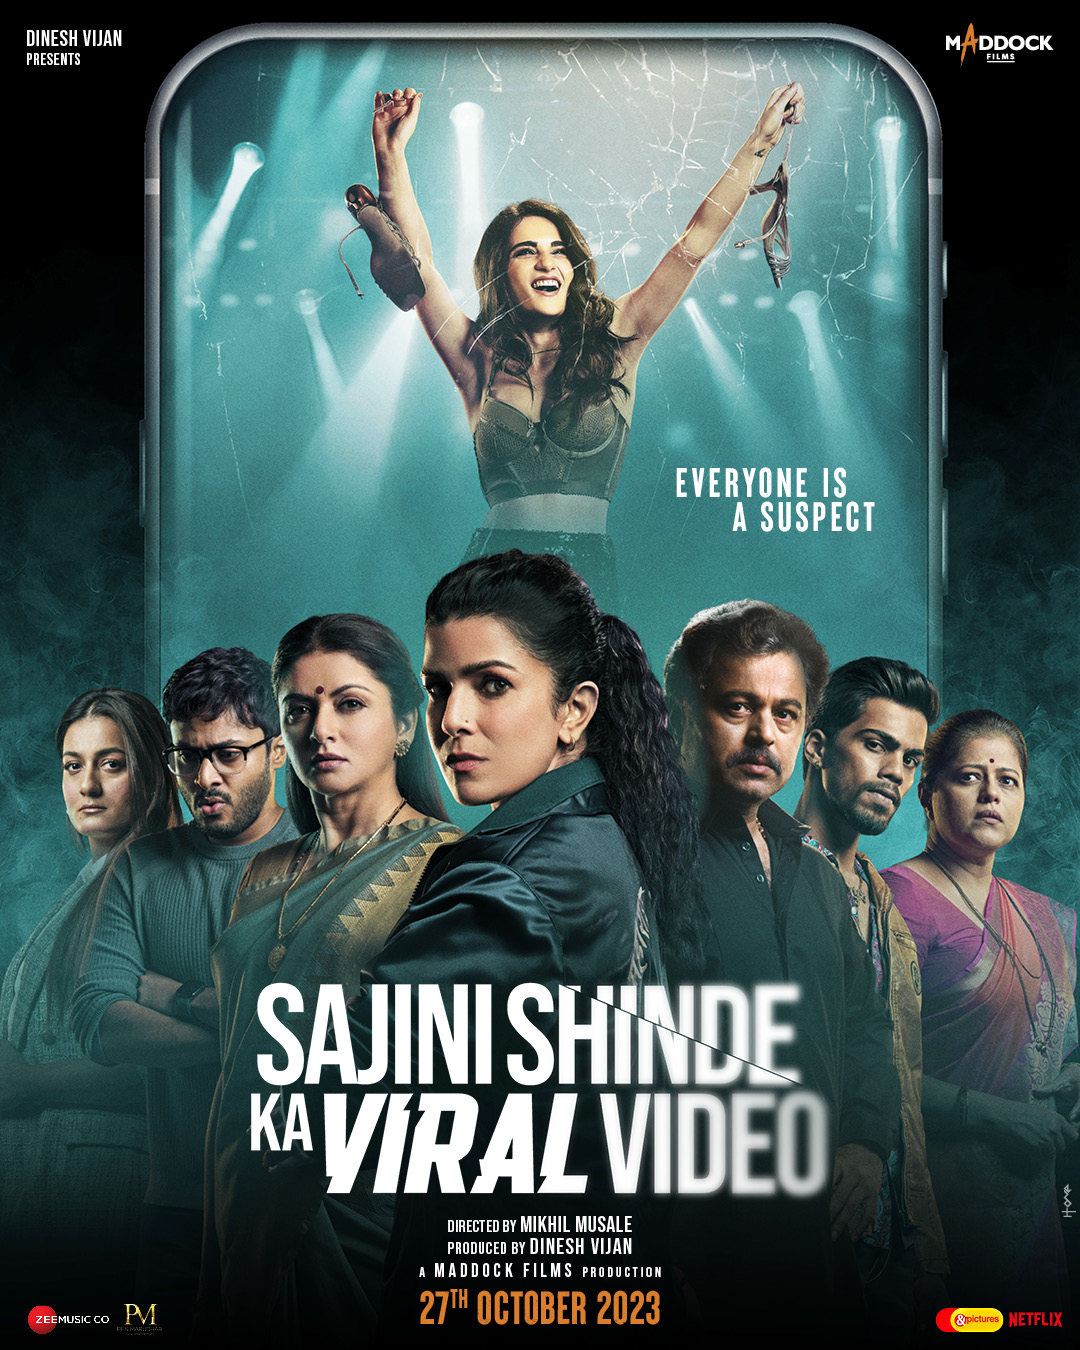 ดูหนังออนไลน์ฟรี ดูหนังออนไลน์ใหม่ Sajini Shinde Ka Viral Video 2023 movie678